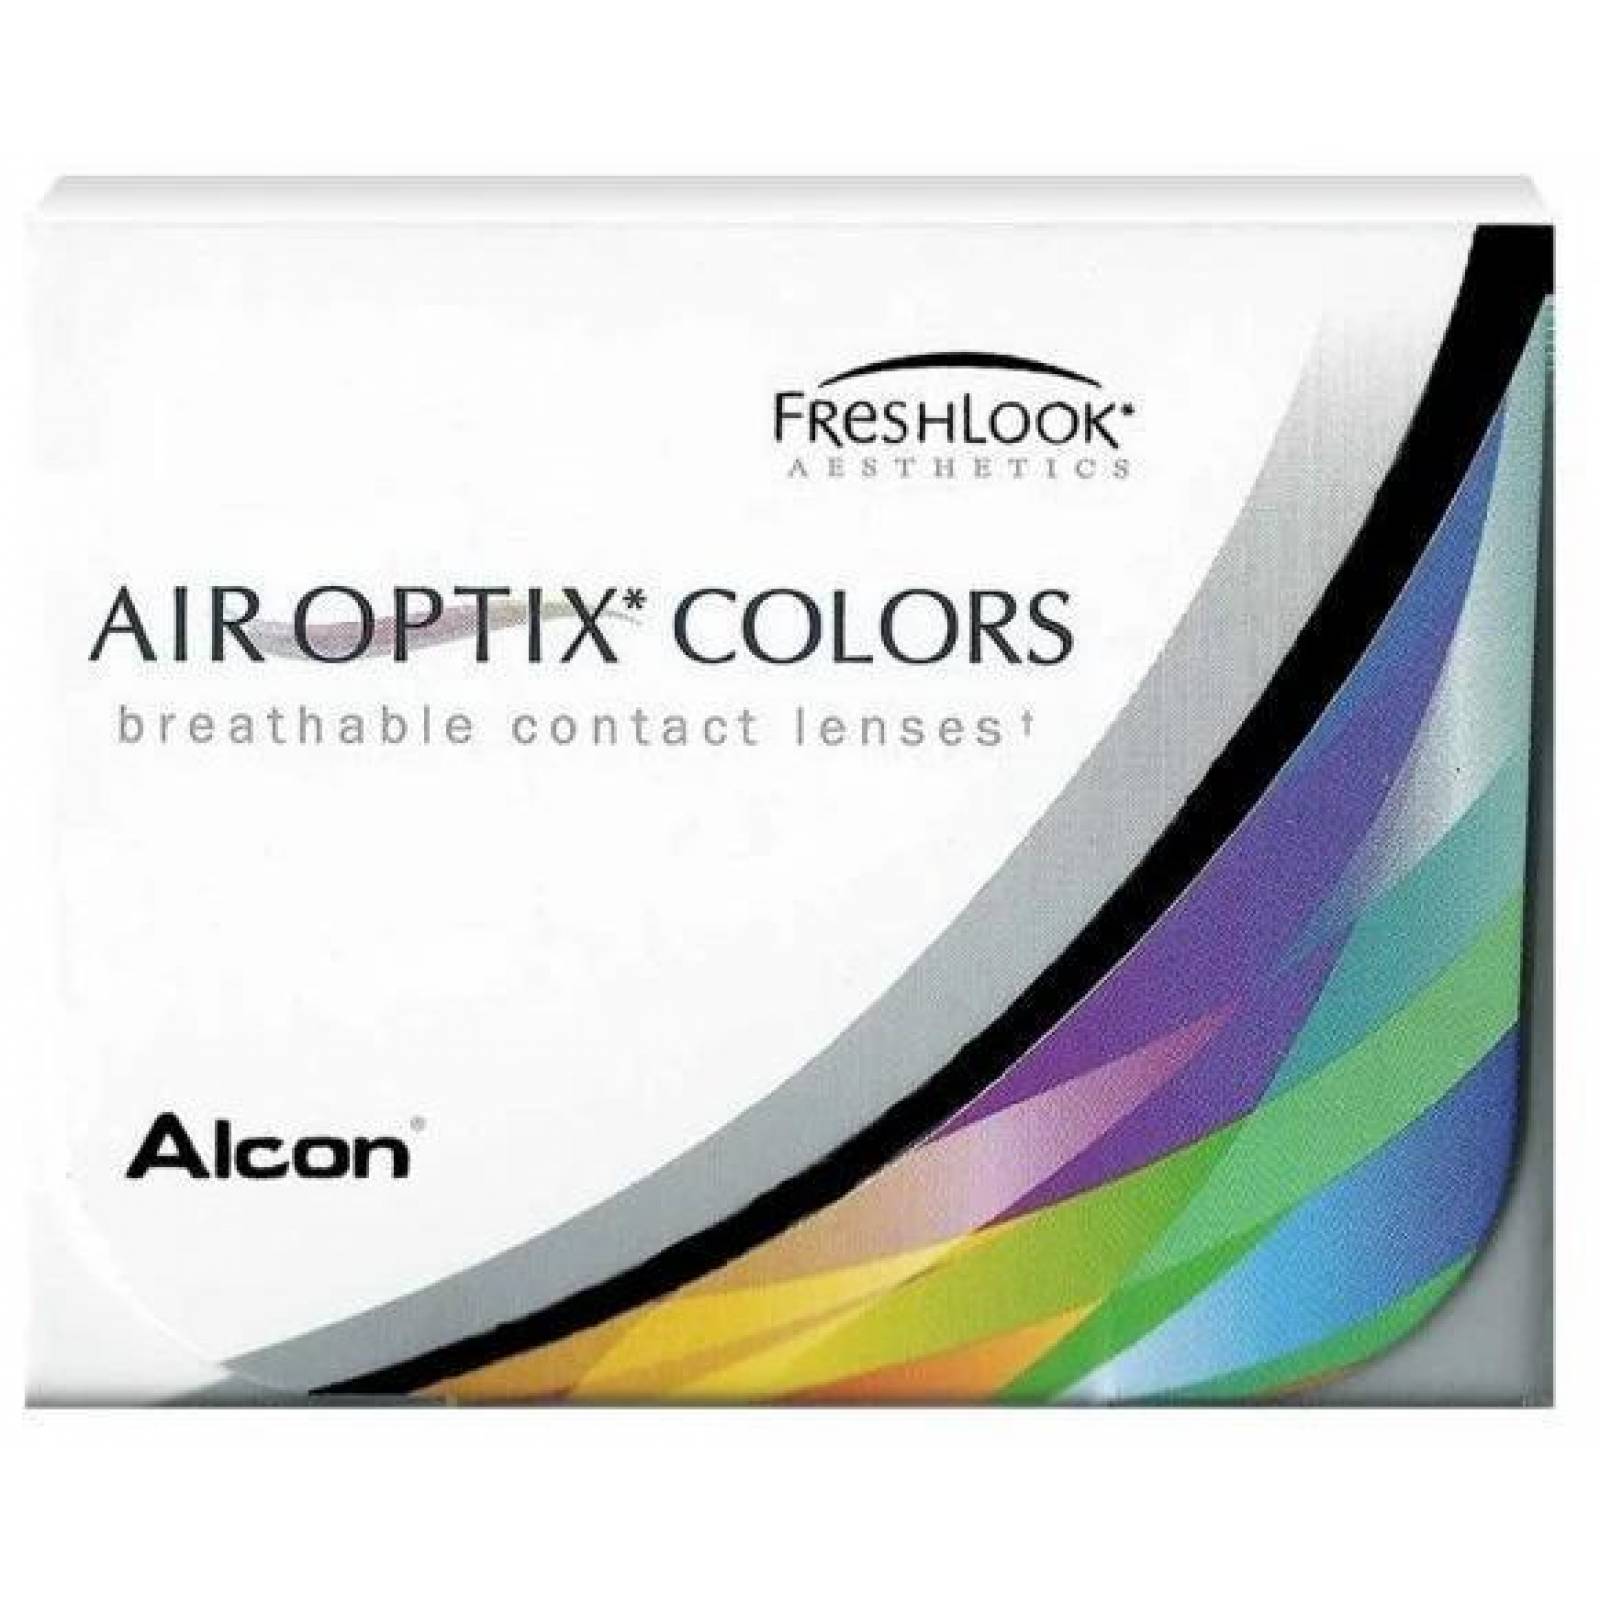 Air optix color pure hazel  - Sears